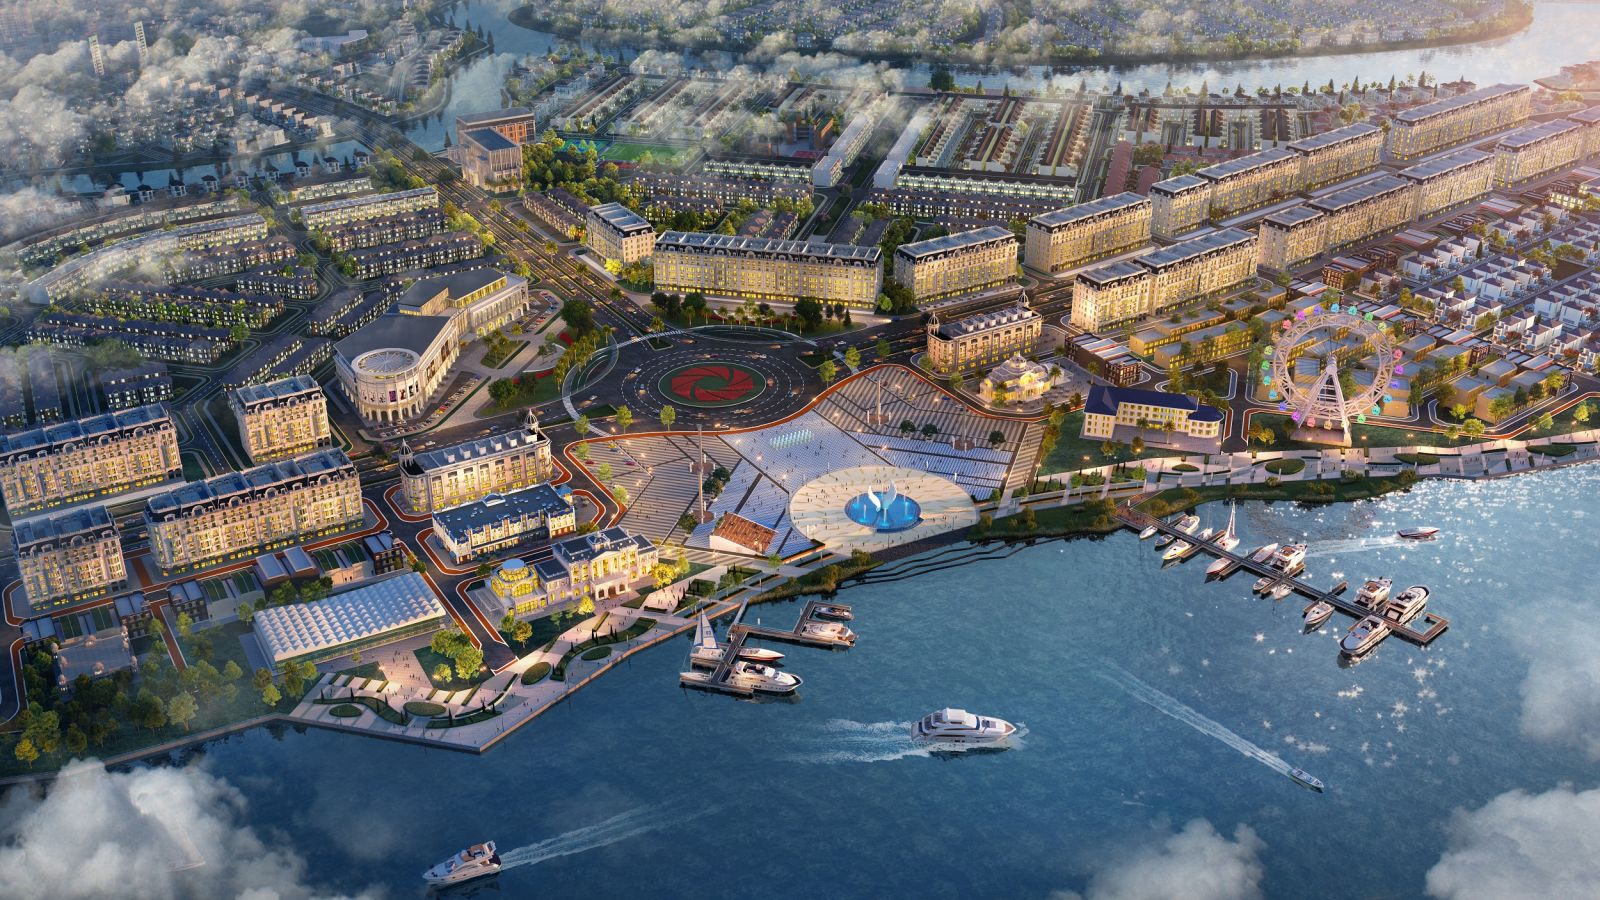 Tổ hợp quảng trường – bến du thuyền Aqua Marina quy mô hàng đầu khu vực thuộc khu đô thị sinh thái thông minh Aqua City dự kiến được khánh thành cuối năm 2021